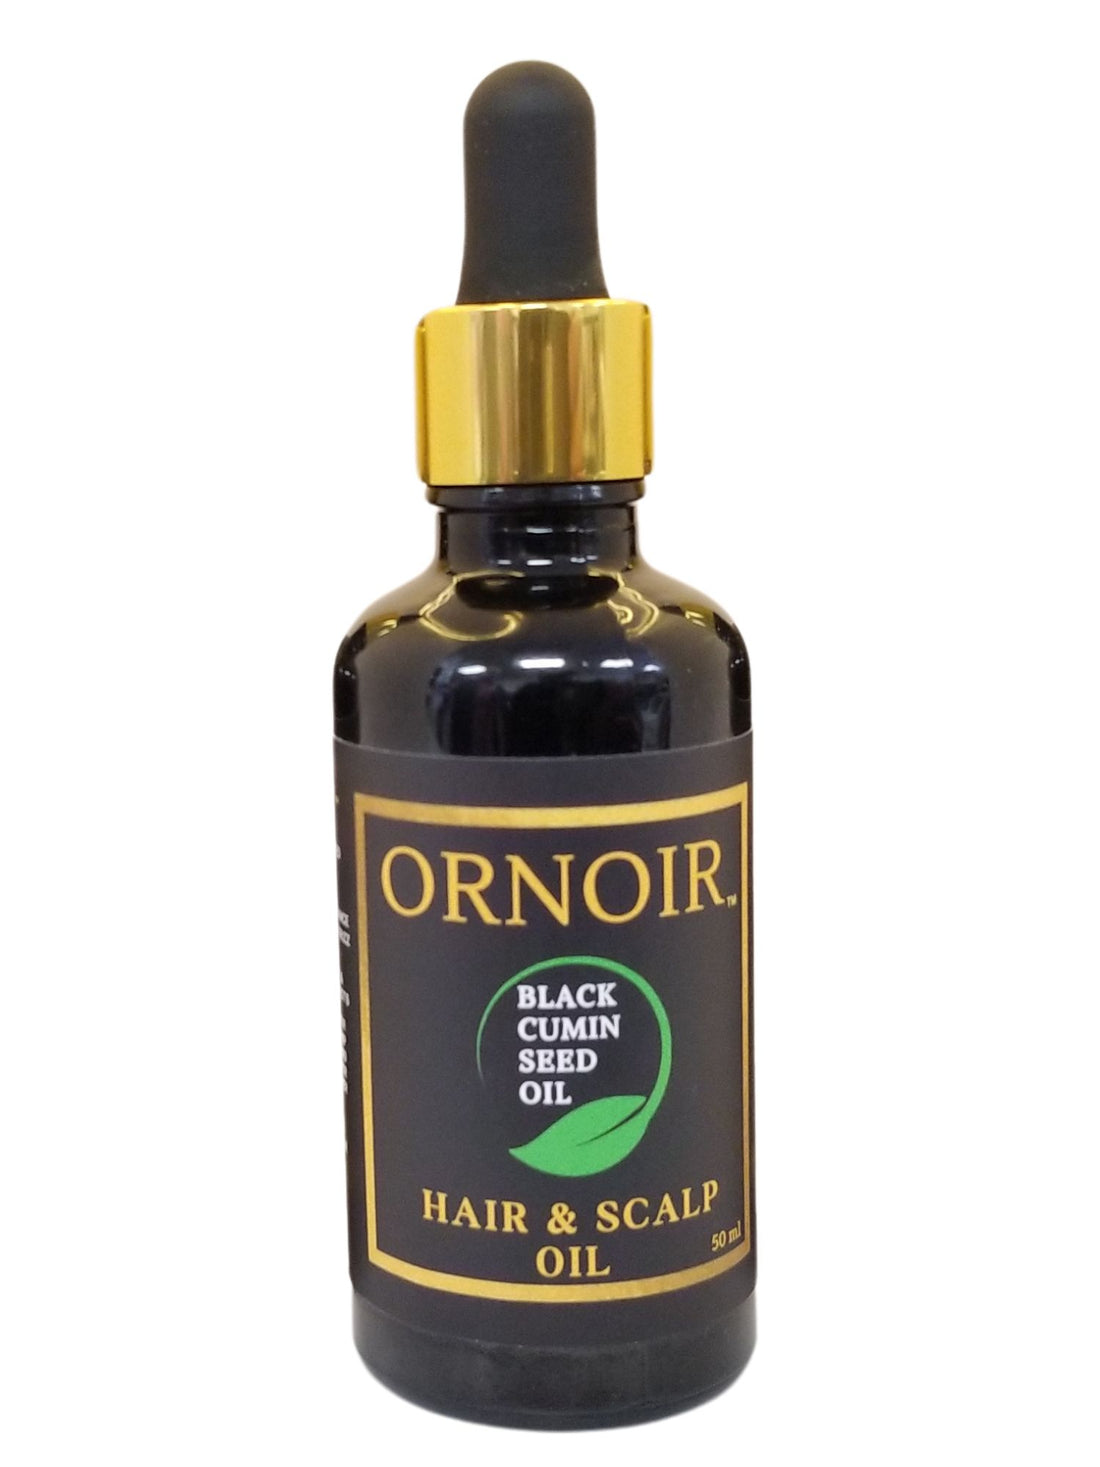 Ornoir Hair and Scalp Oil for Hair Treatment &amp; Hair Growth, Black Cumin Seed Oil for Hair Repair, Hair Loss and Frizz Control